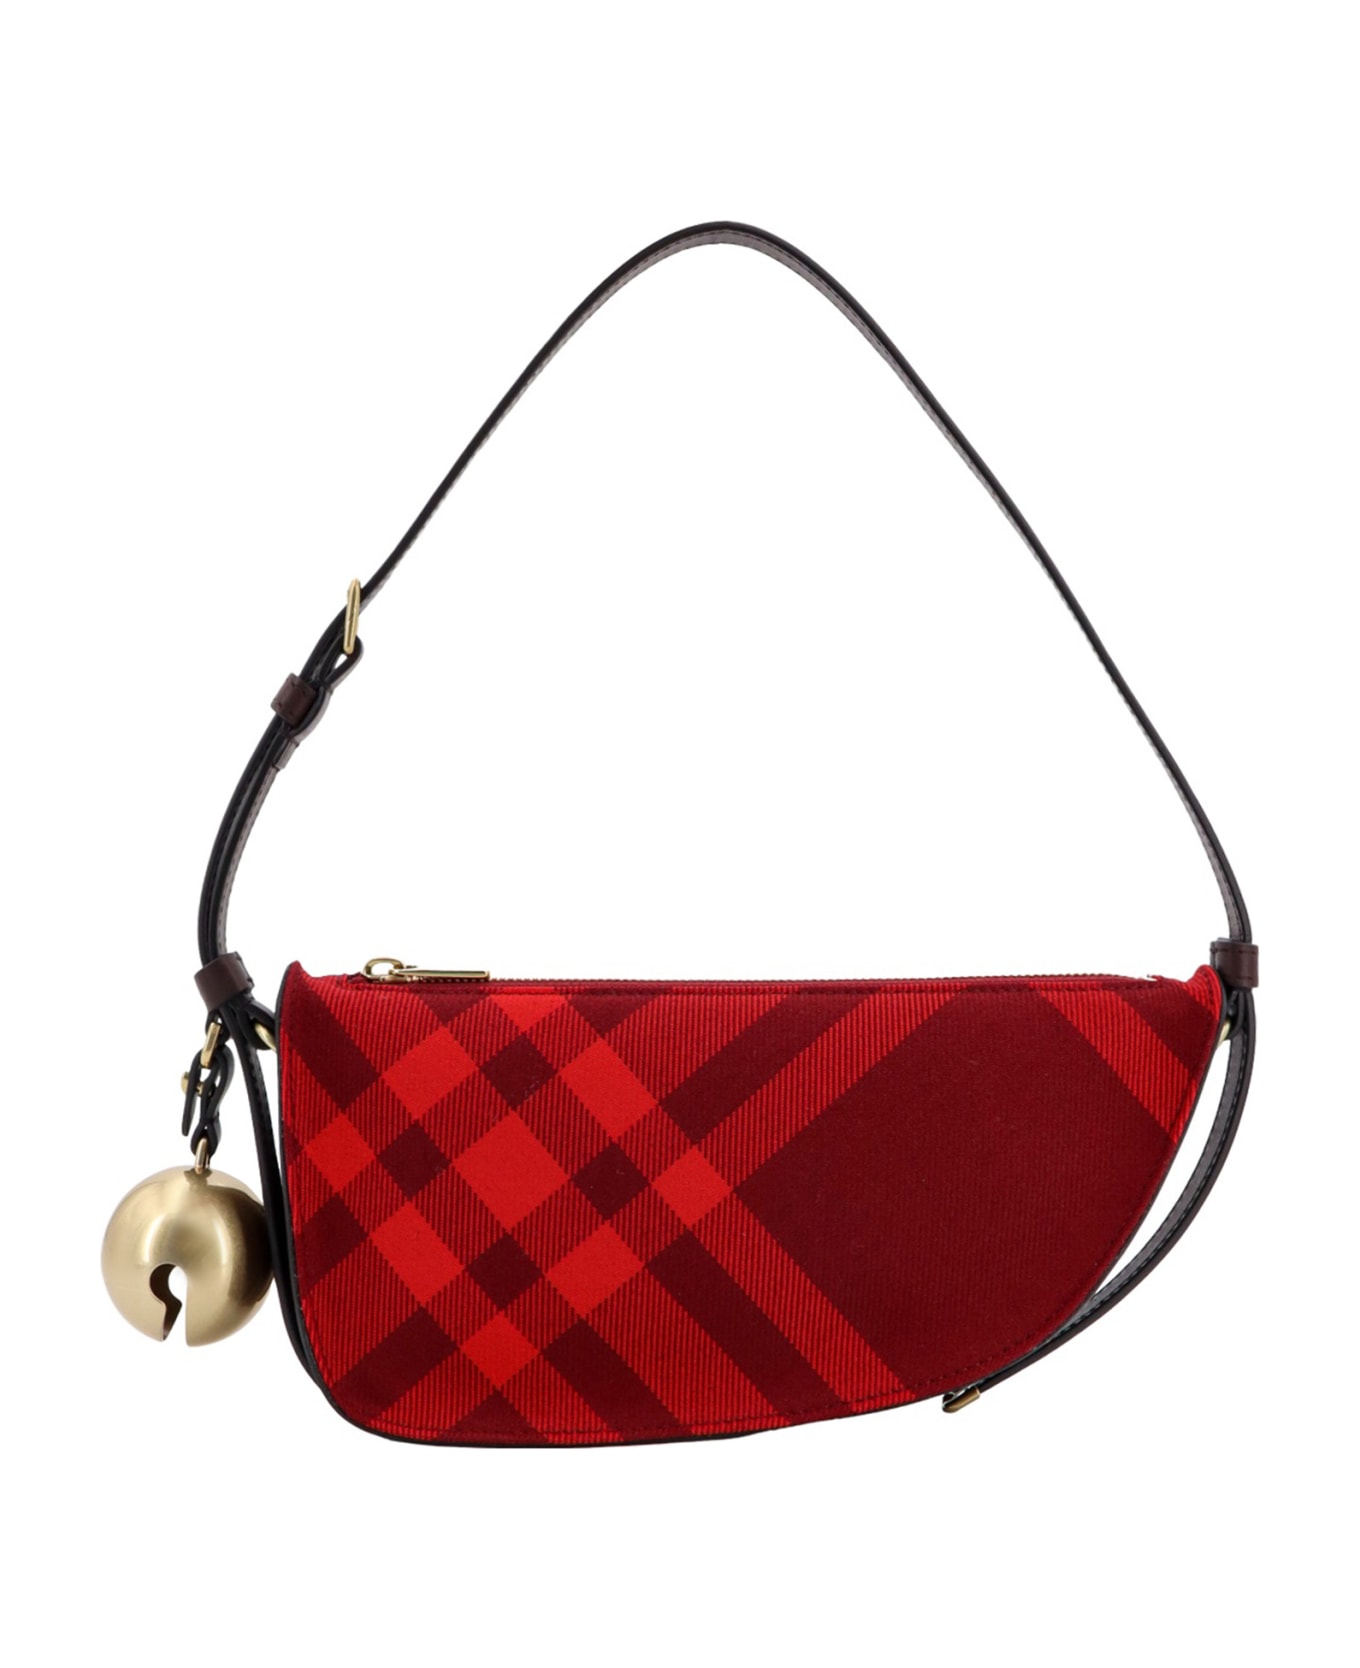 Burberry Ip Check Short Shoulder Bag - Red